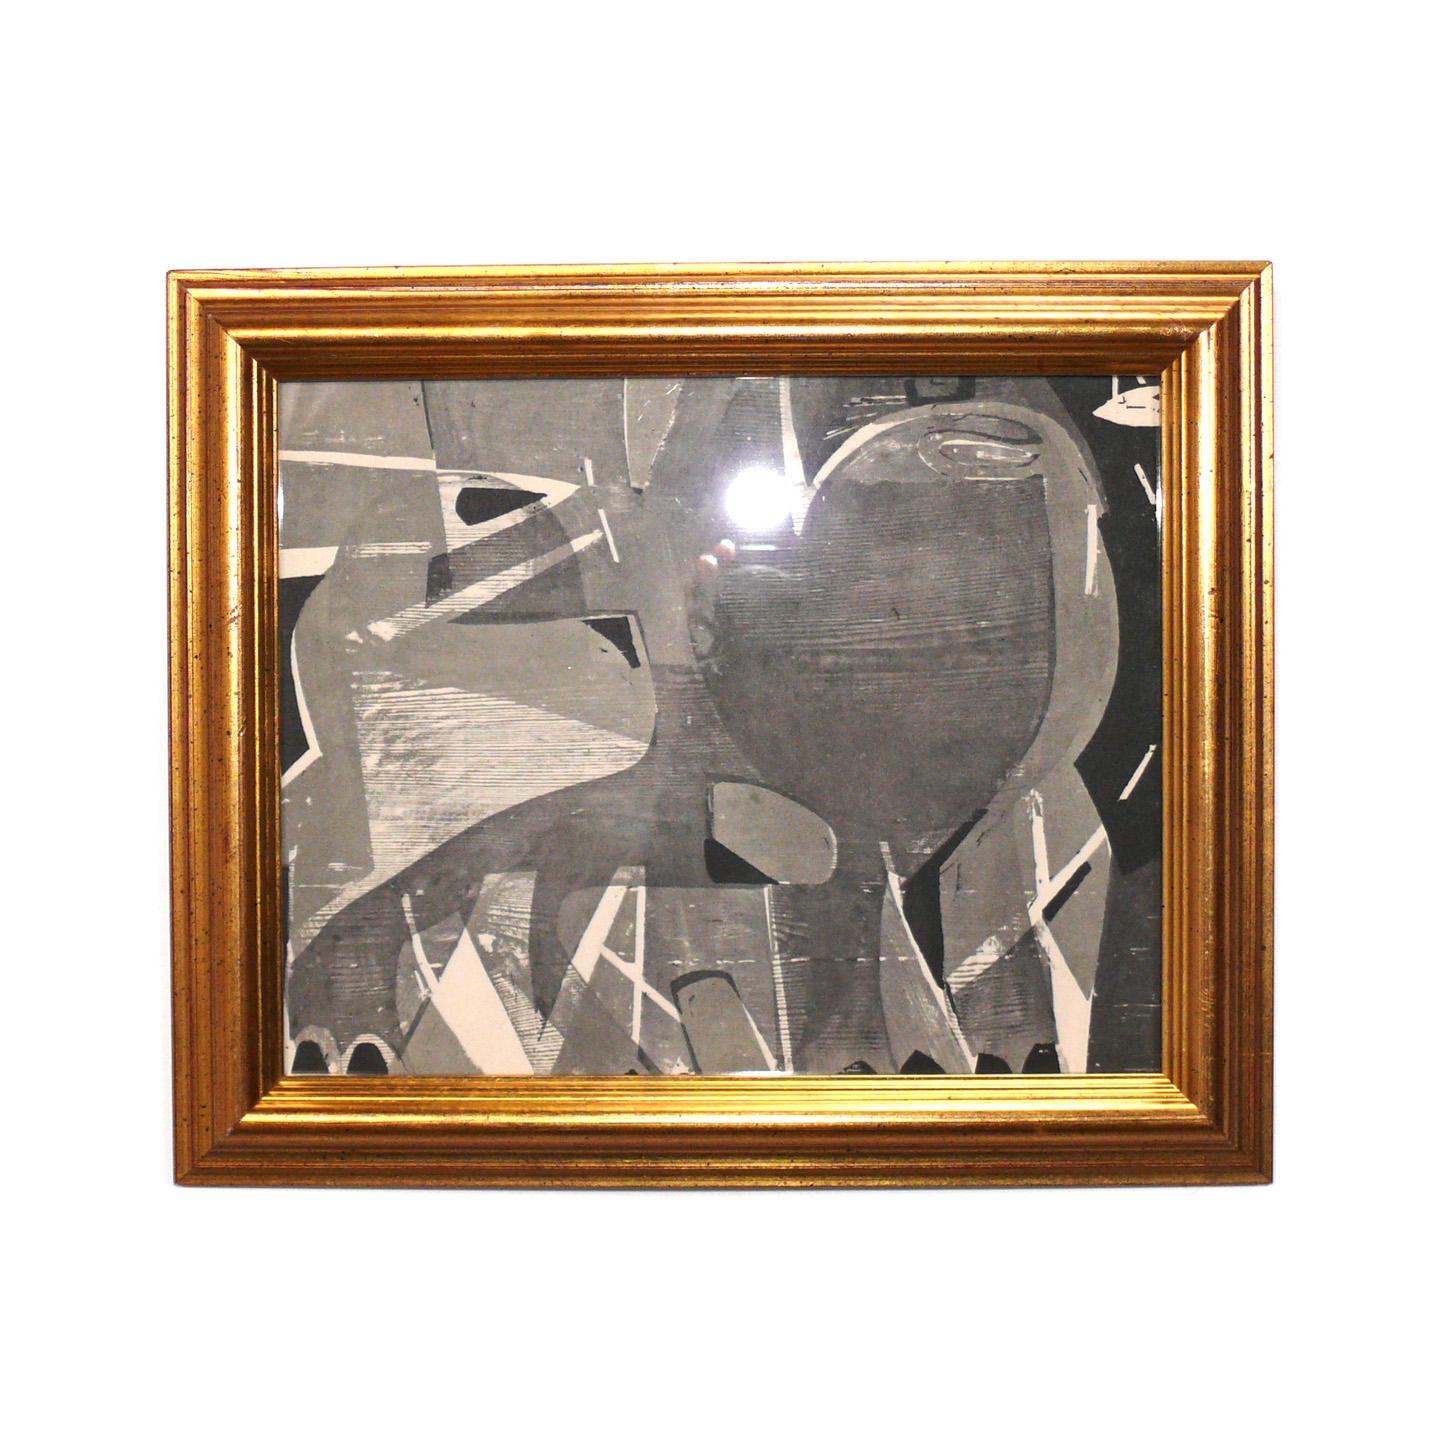 Sélection de gravures sur bois abstraites en noir et blanc réalisées par Hap Grieshaber, Allemand, vers les années 1960. Ils ont été récemment encadrés professionnellement dans des cadres en bois doré d'époque sous verre résistant aux UV. Leur prix